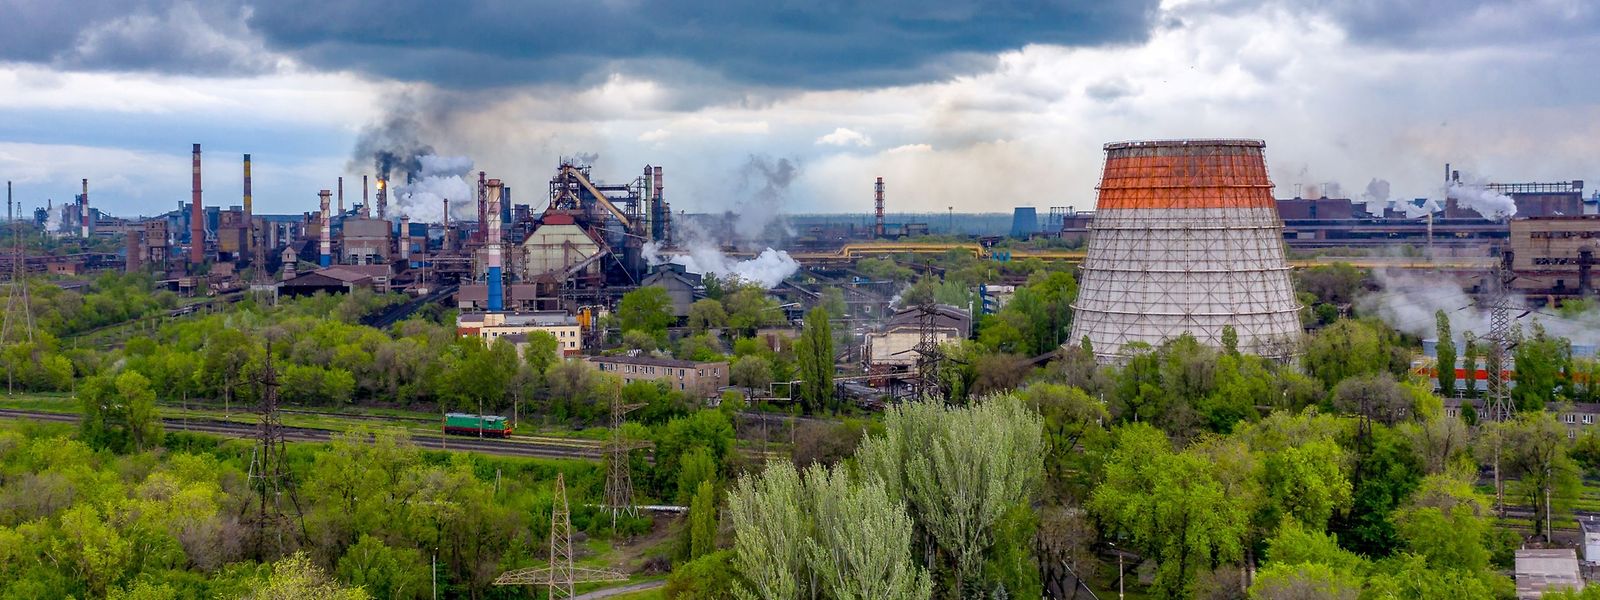 ArcelorMittal ist einer der größten Investoren in der Ukraine, wo der Stahlhersteller 2005 das Werk Kryviy Rih für 5,2 Milliarden US-Dollar gekauft hat.